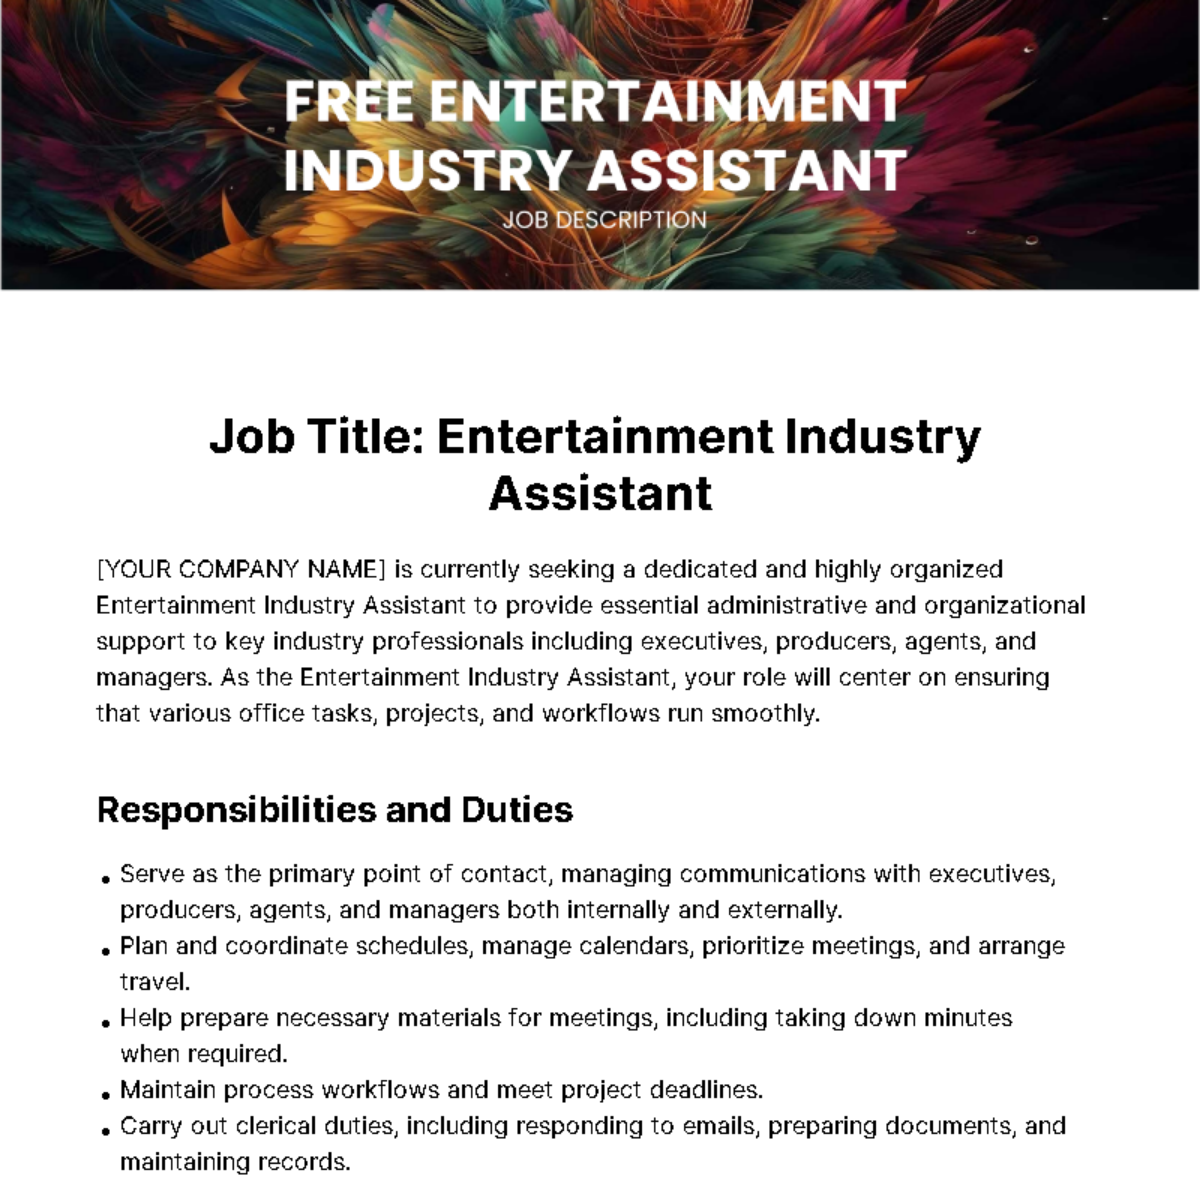 Entertainment Industry Assistant Job Description Template